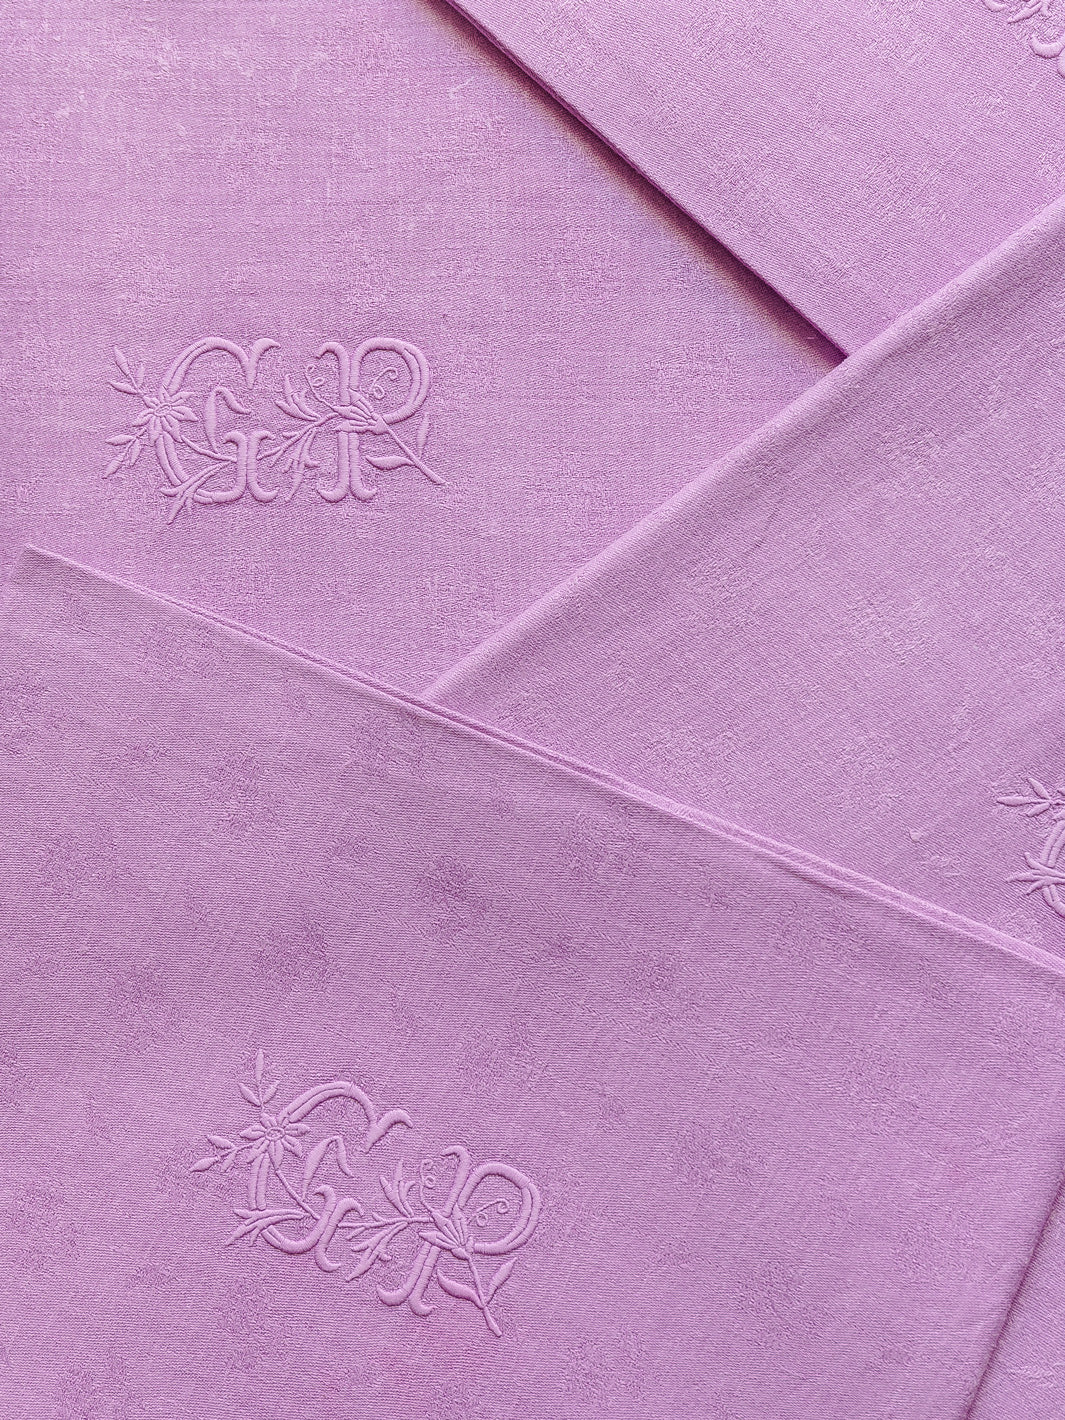 Set of 4 Violet Damask "GR" napkins